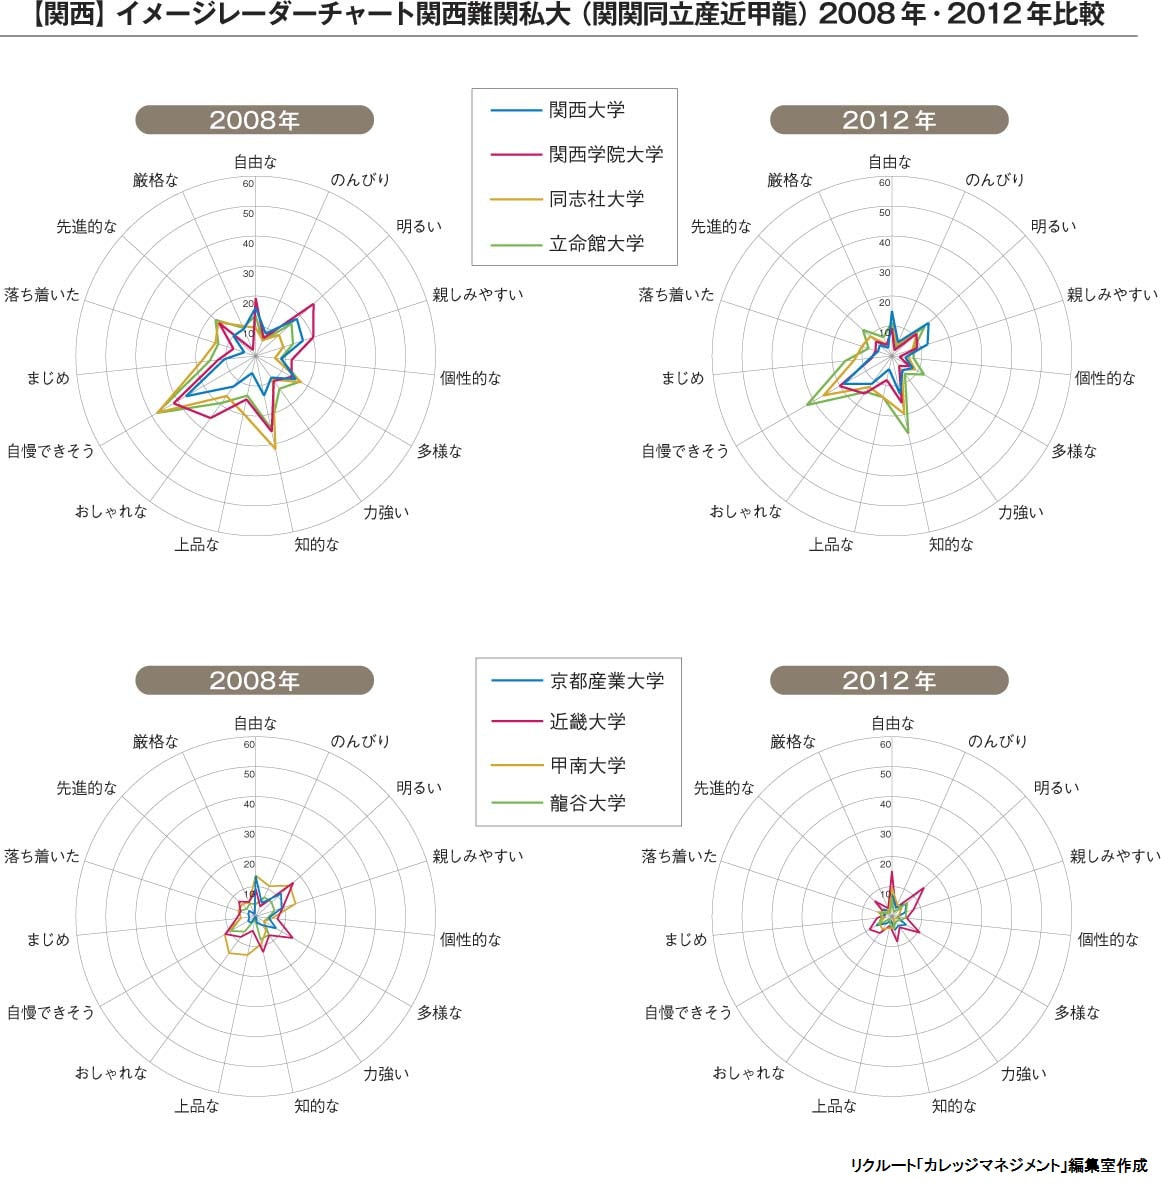 イメージレーダーチャート関西2008年・2012年比較